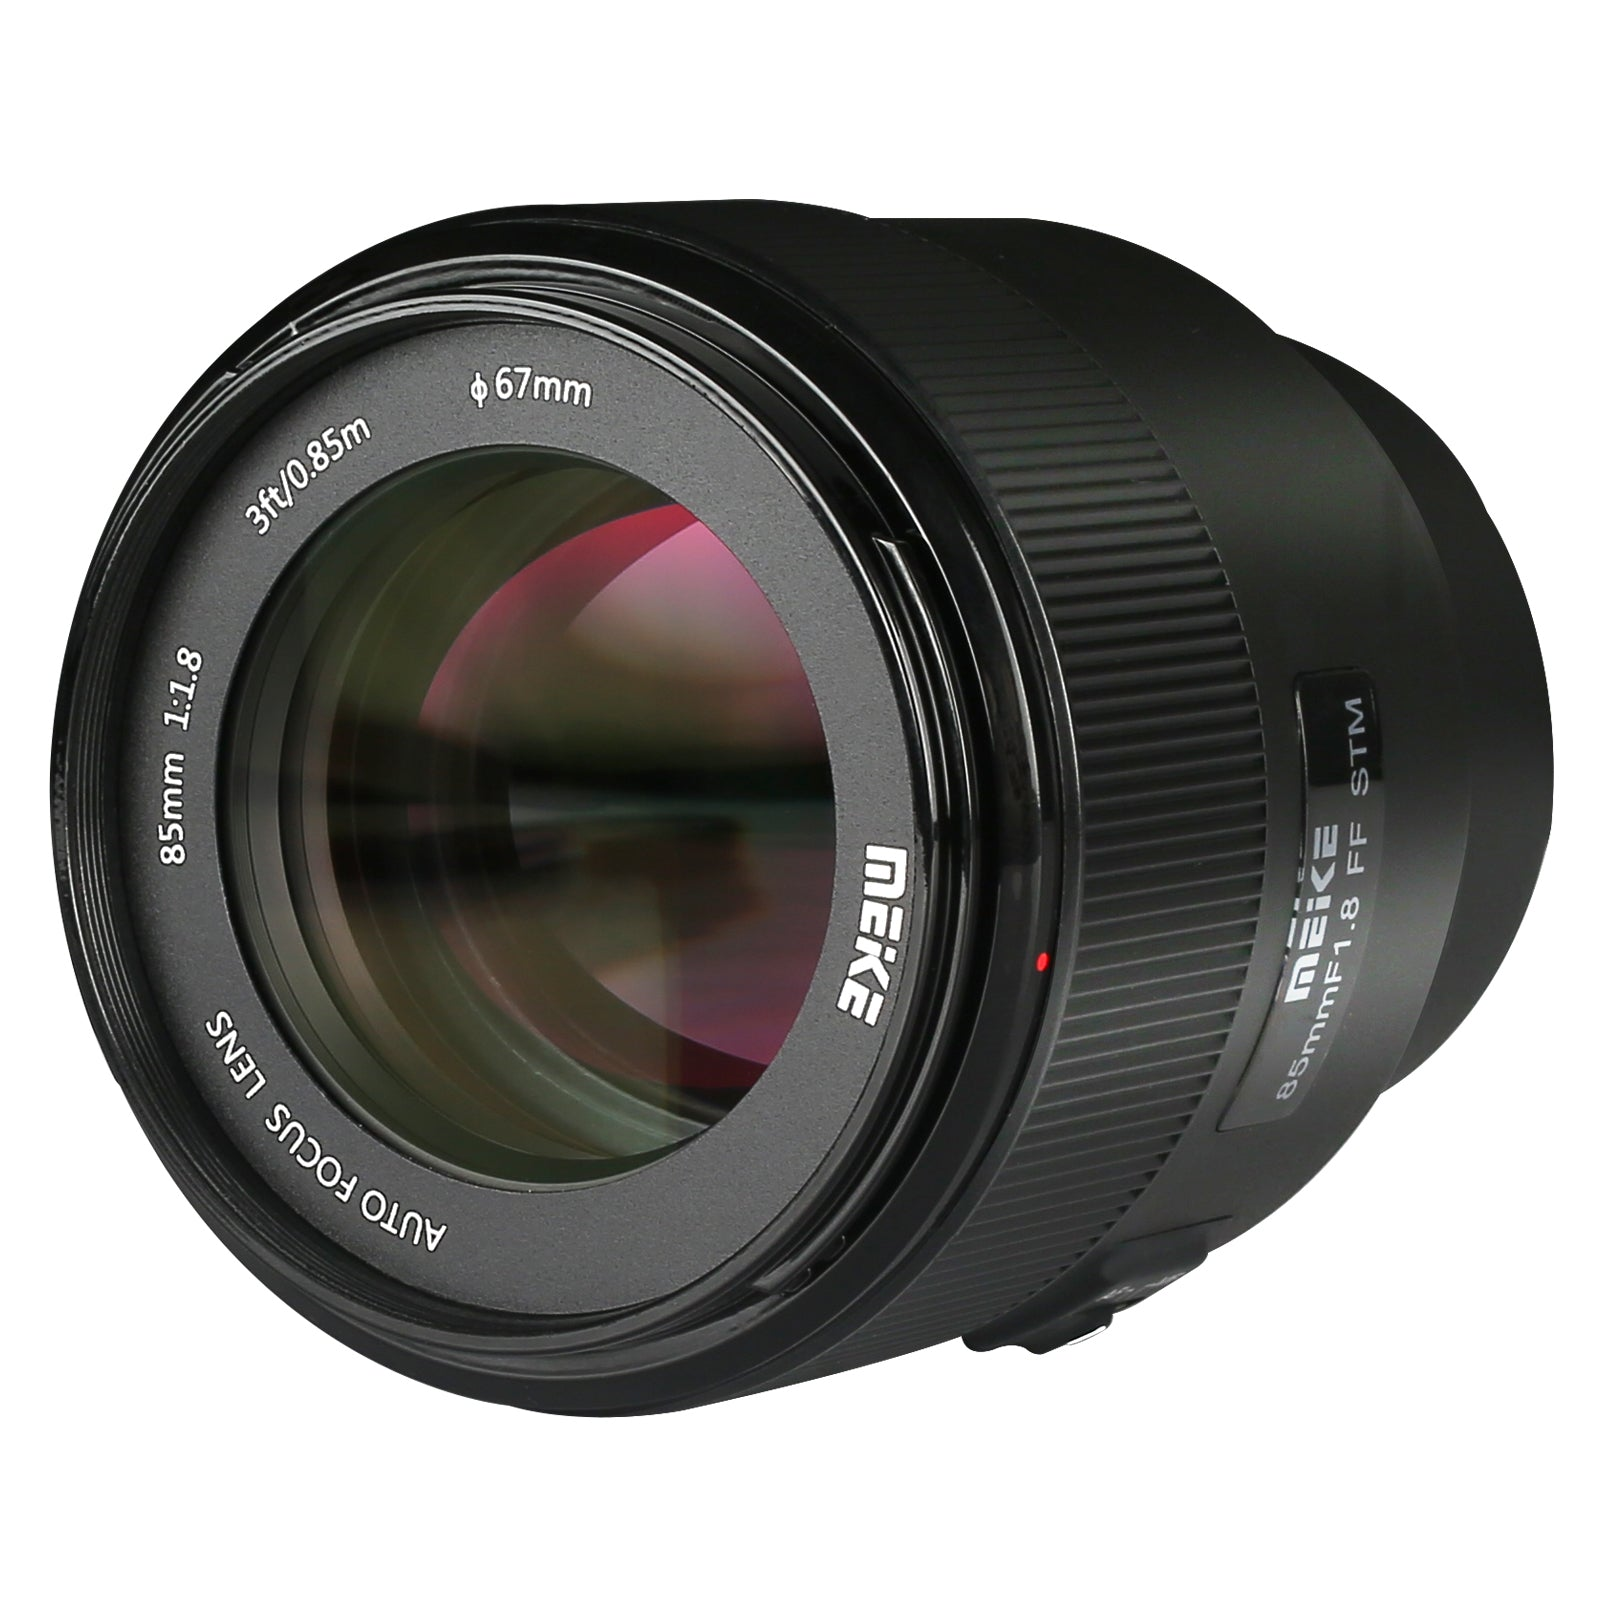 Meike 85mm F1.8 Auto Focus STM Full Frame Lens for Fujifilm X